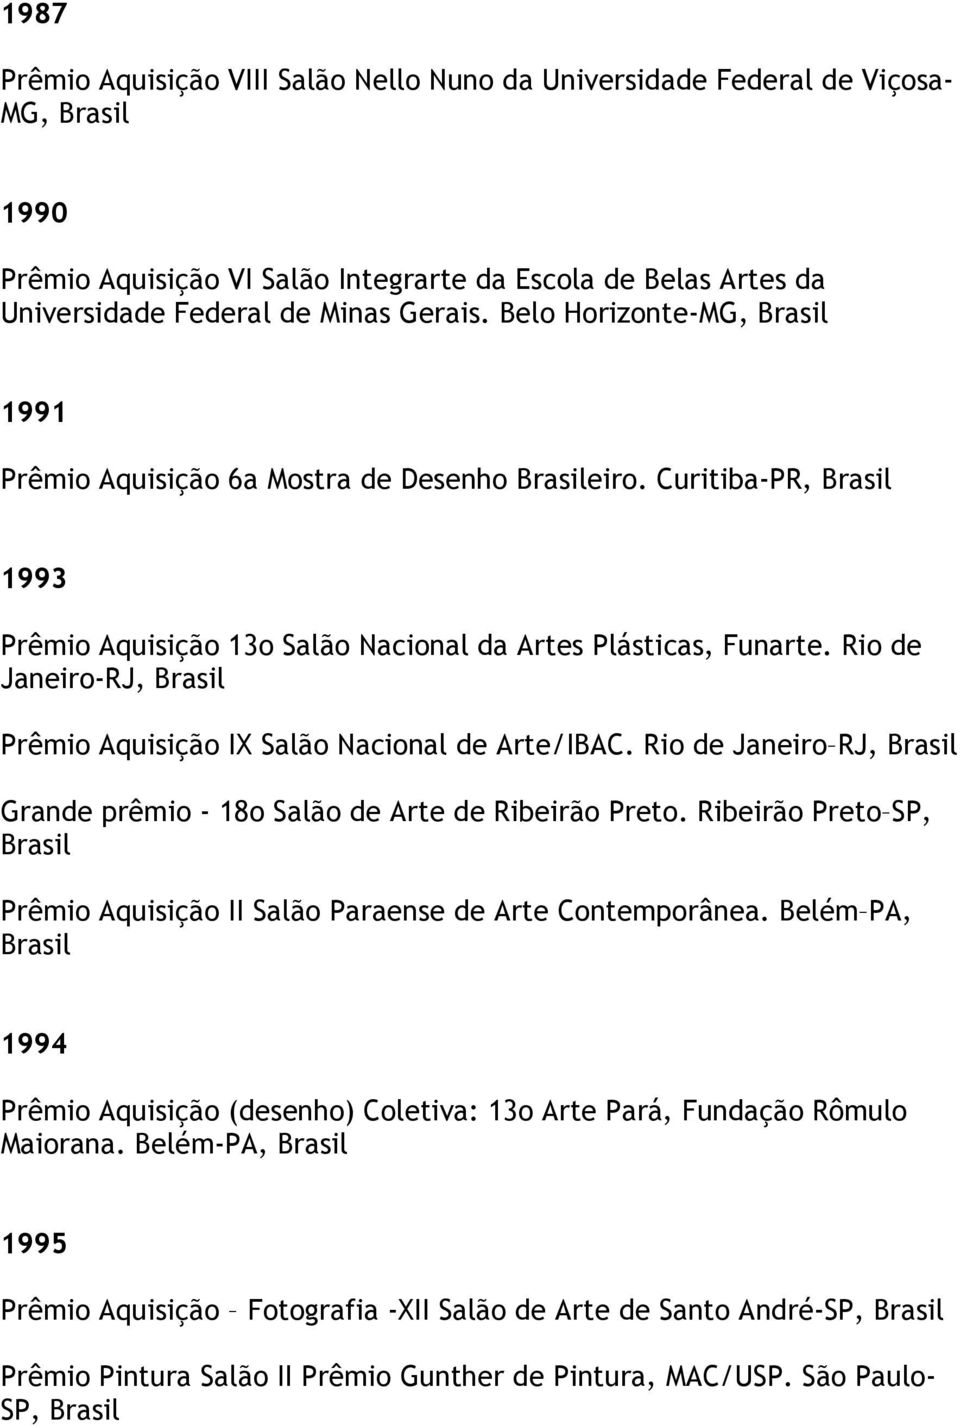 Rio de Janeiro-RJ, Prêmio Aquisição IX Salão Nacional de Arte/IBAC. Rio de Janeiro RJ, Grande prêmio - 18o Salão de Arte de Ribeirão Preto.